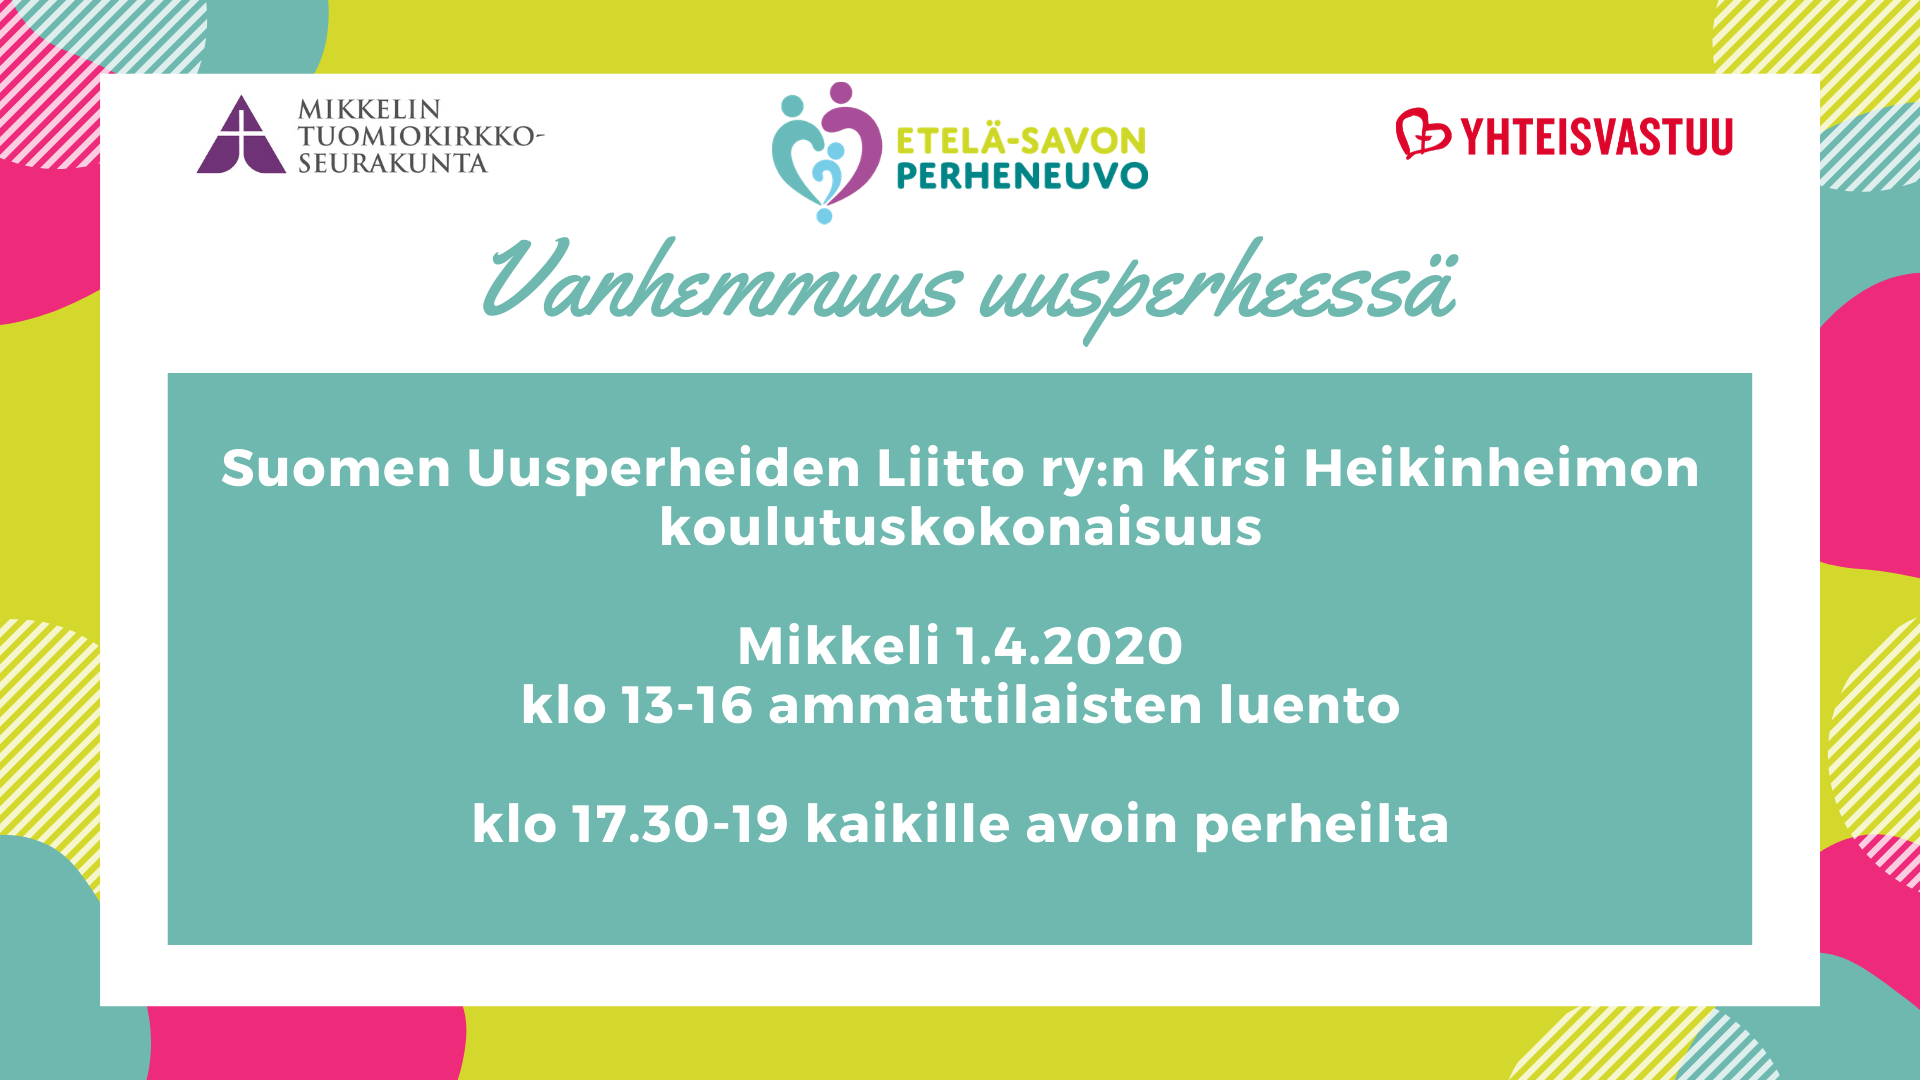 Mikkelin Perheneuvon avoimet perheillat keväällä 2020 19.2., 1.4. ja 6.5.